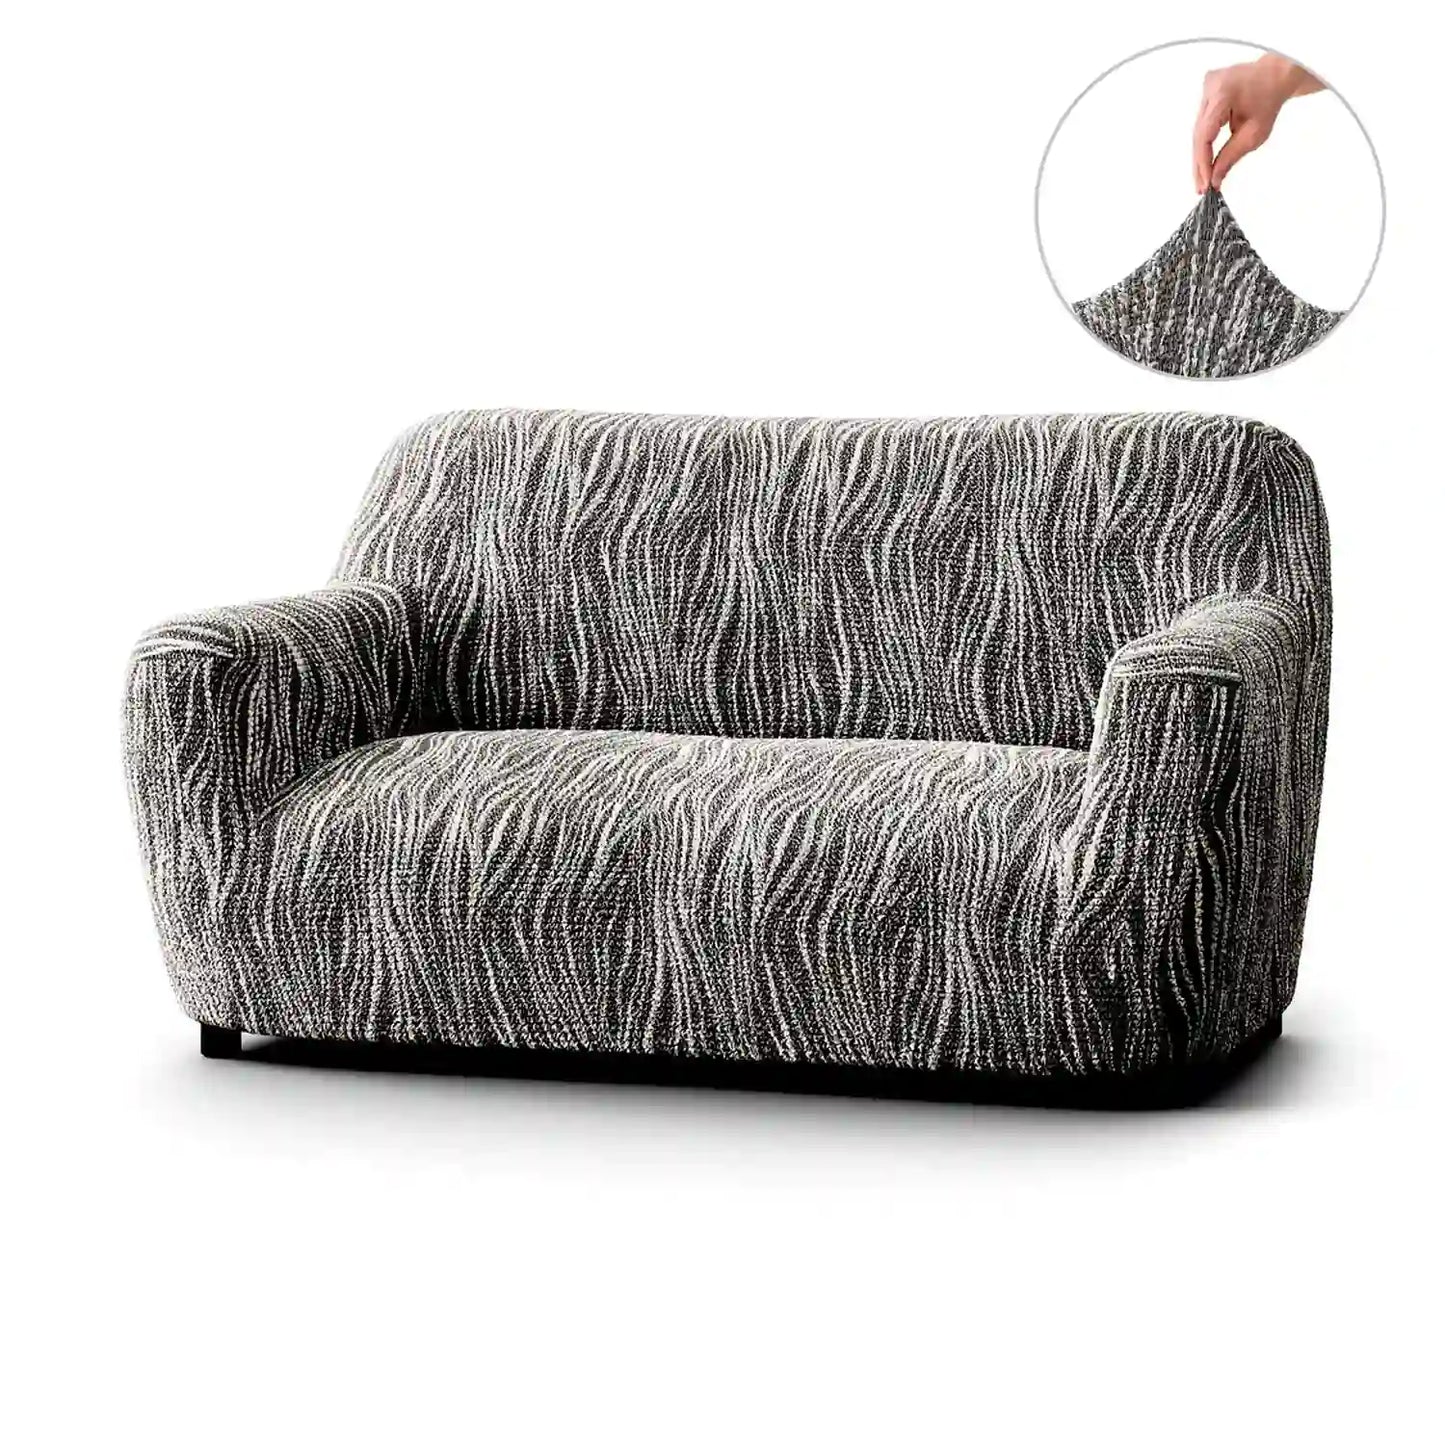 2 Seater Sofa Cover - Universo Grey, Microfibra Printed